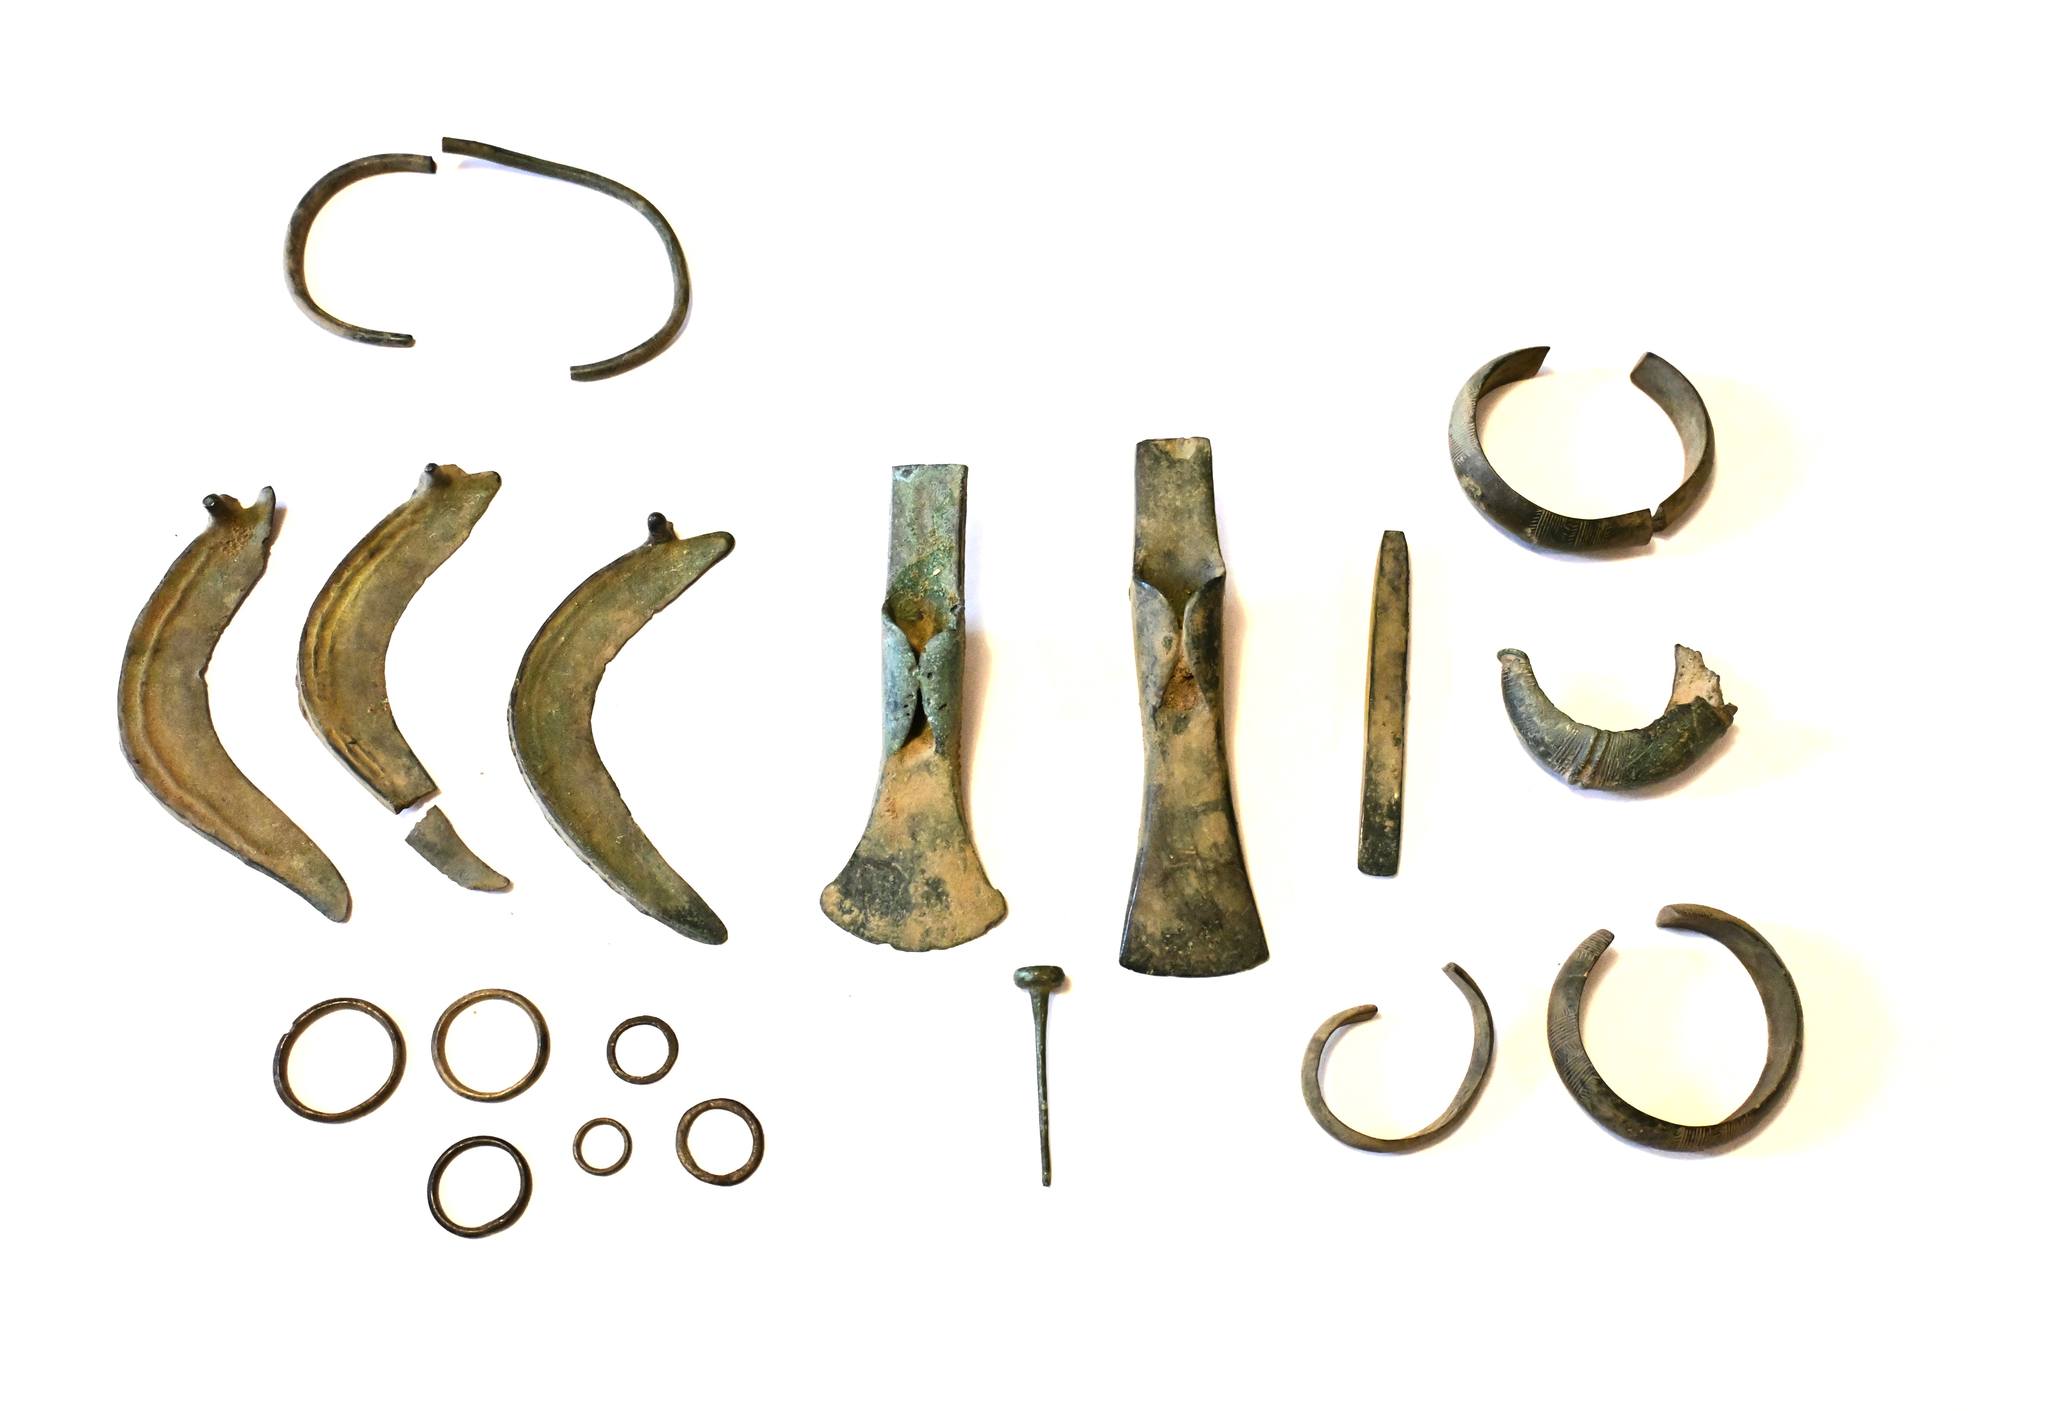 Eine Gruppe von Detektiven entdeckte einen Schatz an Äxten, Sicheln und anderen bronzezeitlichen Gegenständen